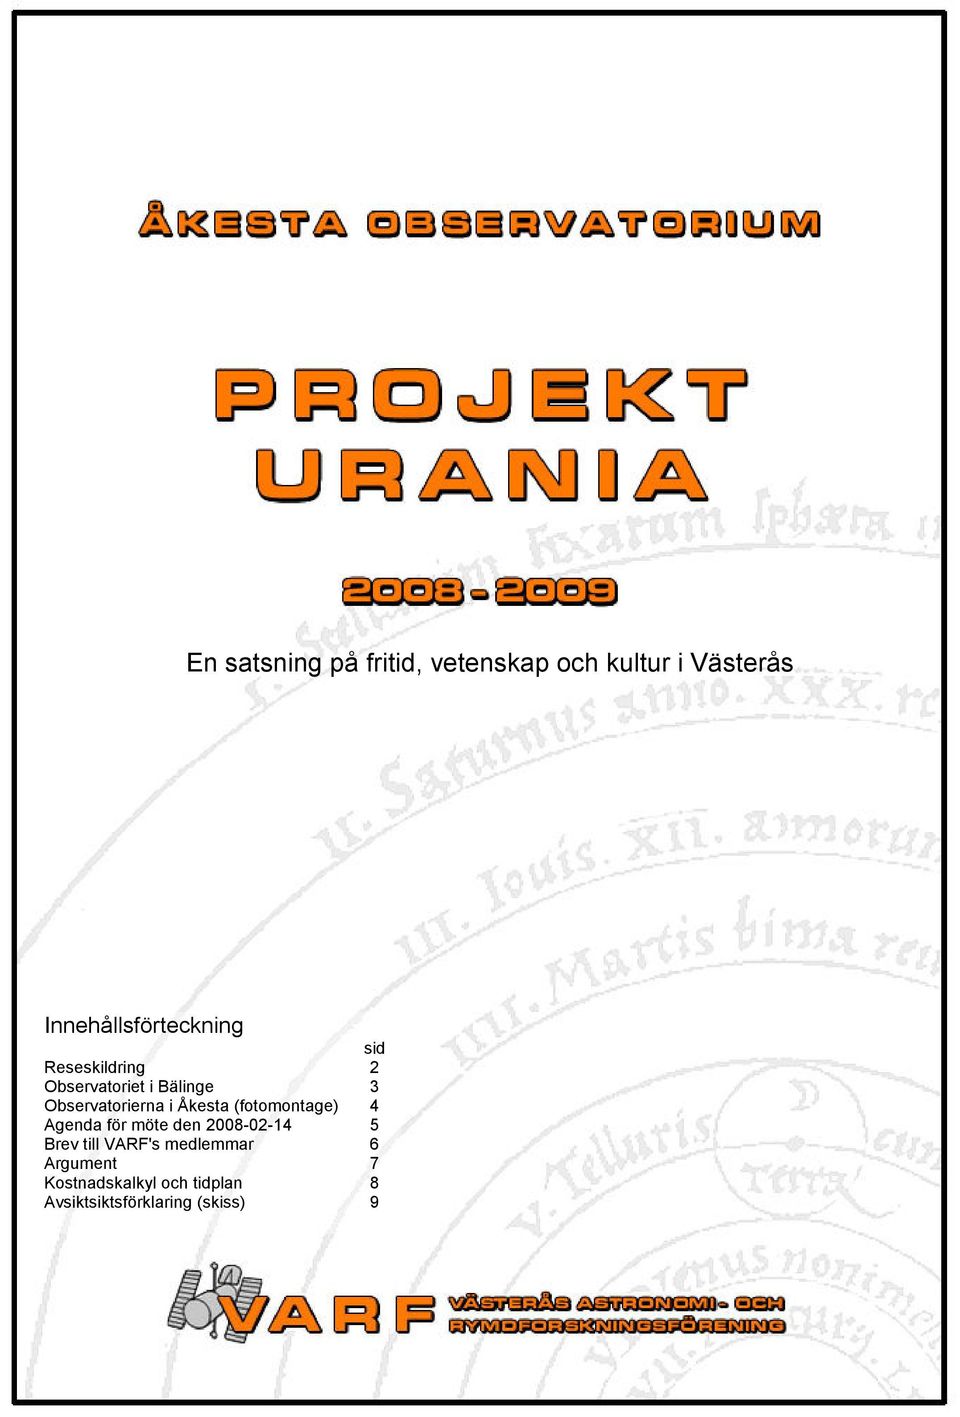 Observtoriern i Åkest (fotomontge) 4 Agend för möte den 2008-02-14 5